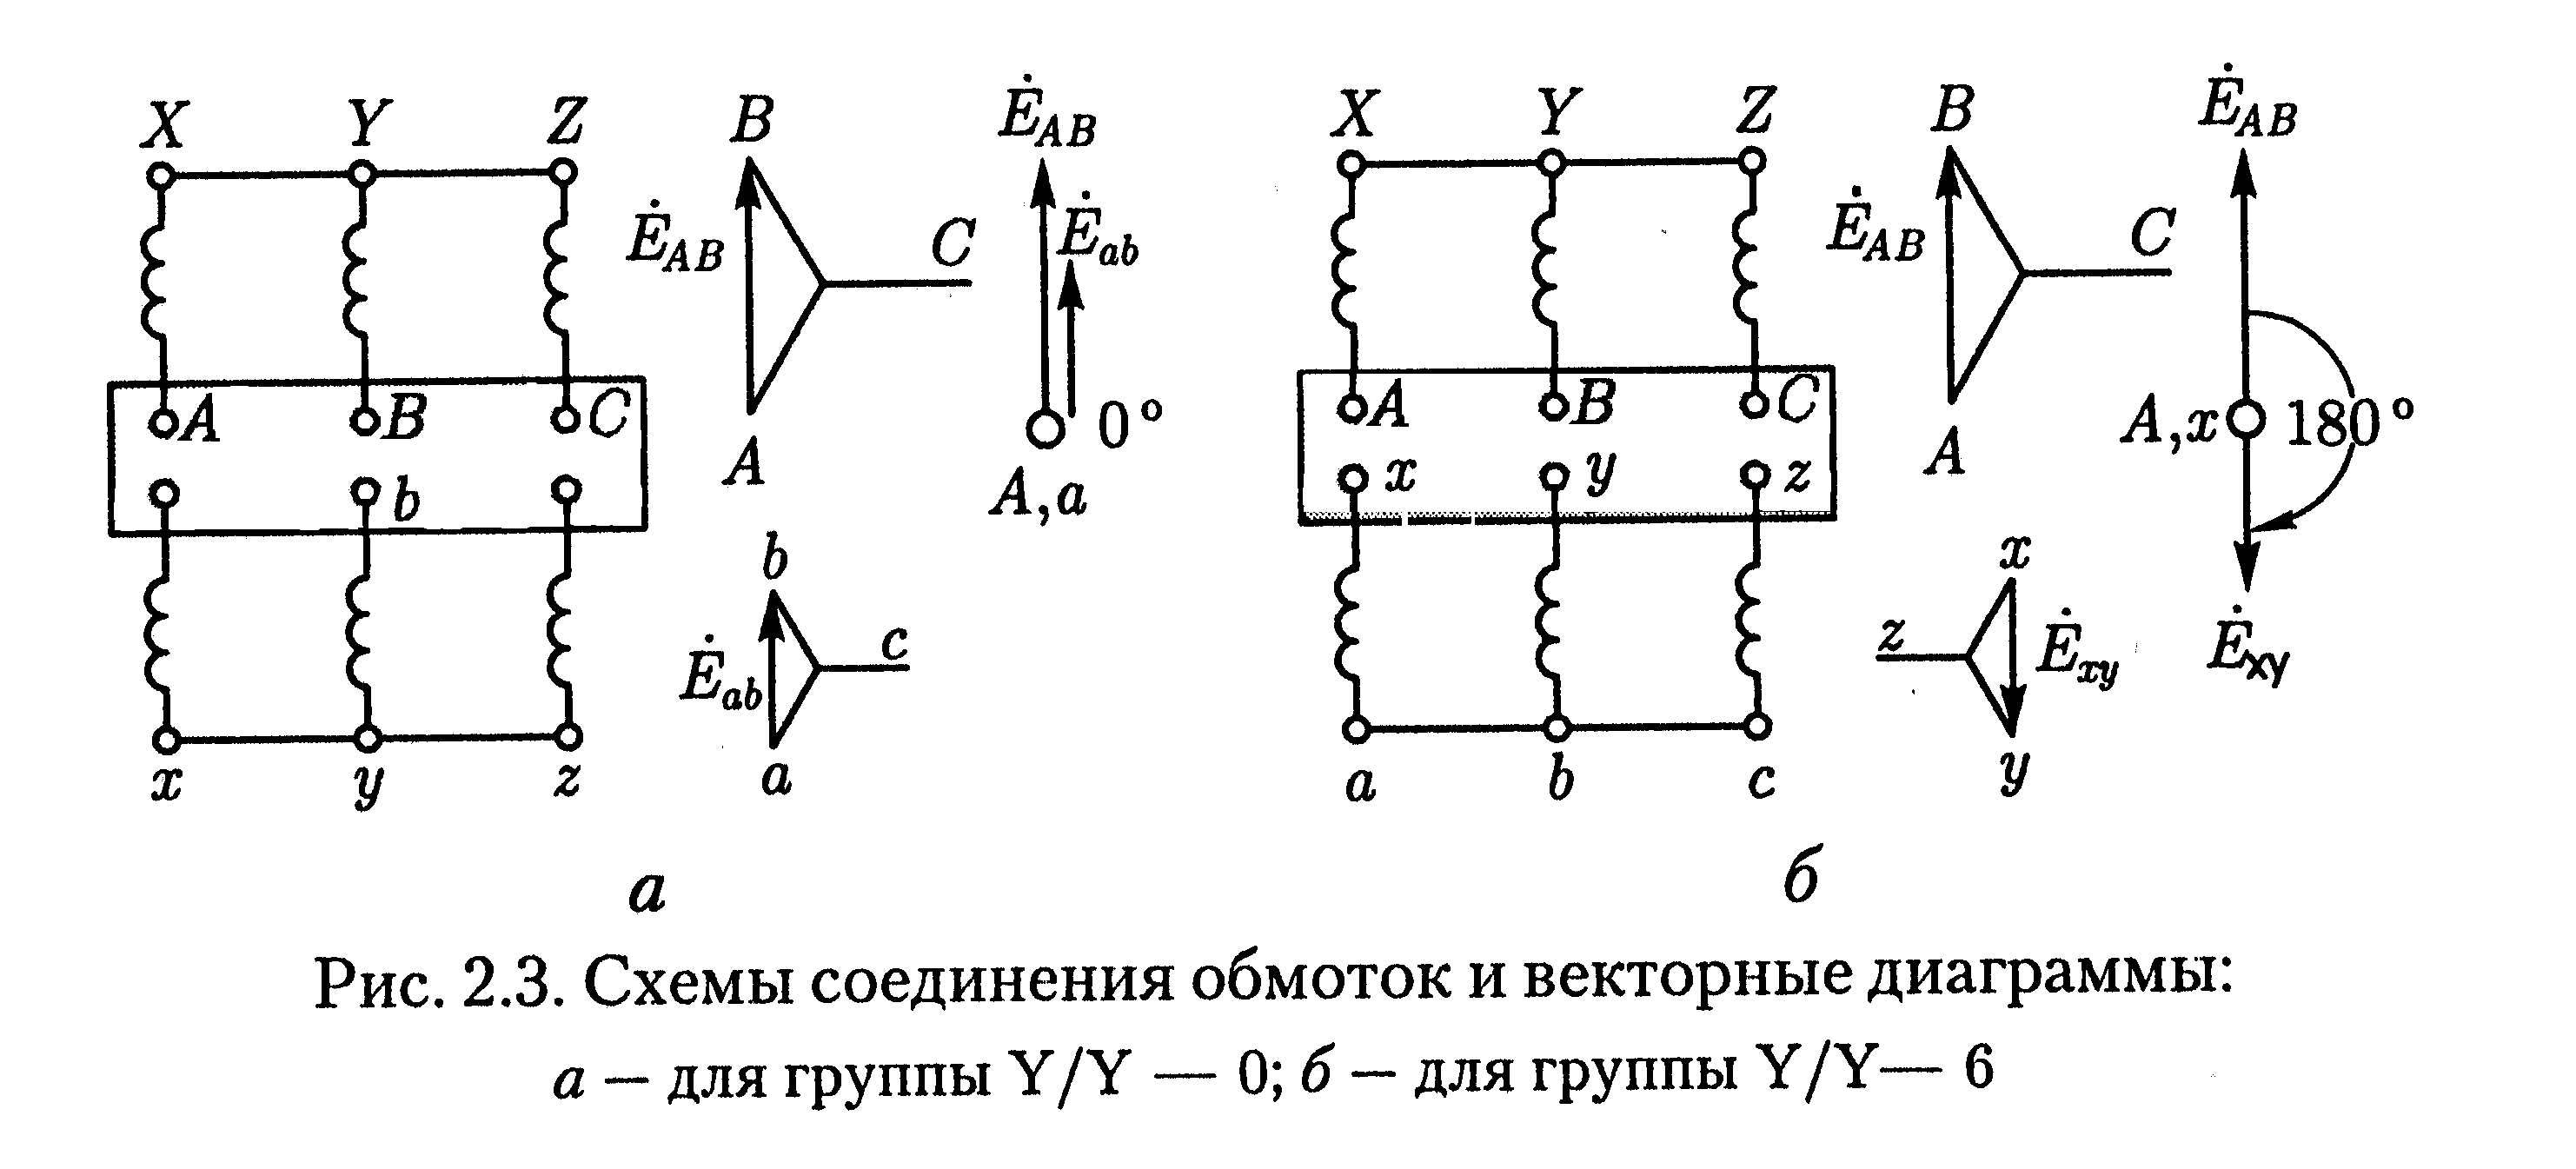 Схема соединения обмоток y/y